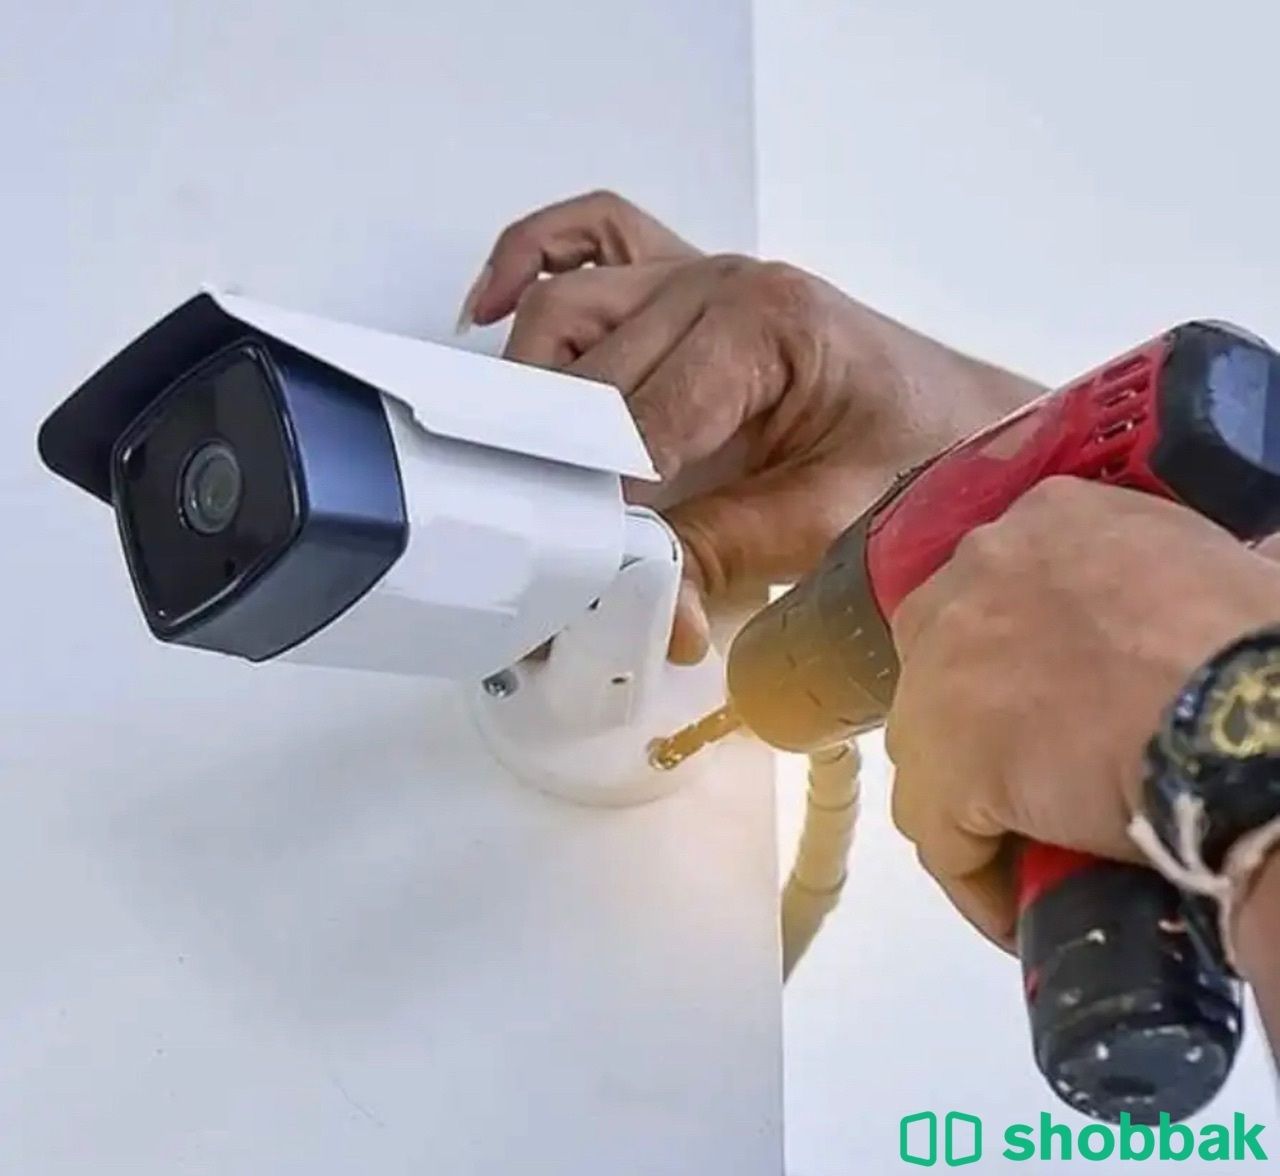 تركيب كاميرات مراقبة اقل سعر اعلى جودة. Shobbak Saudi Arabia